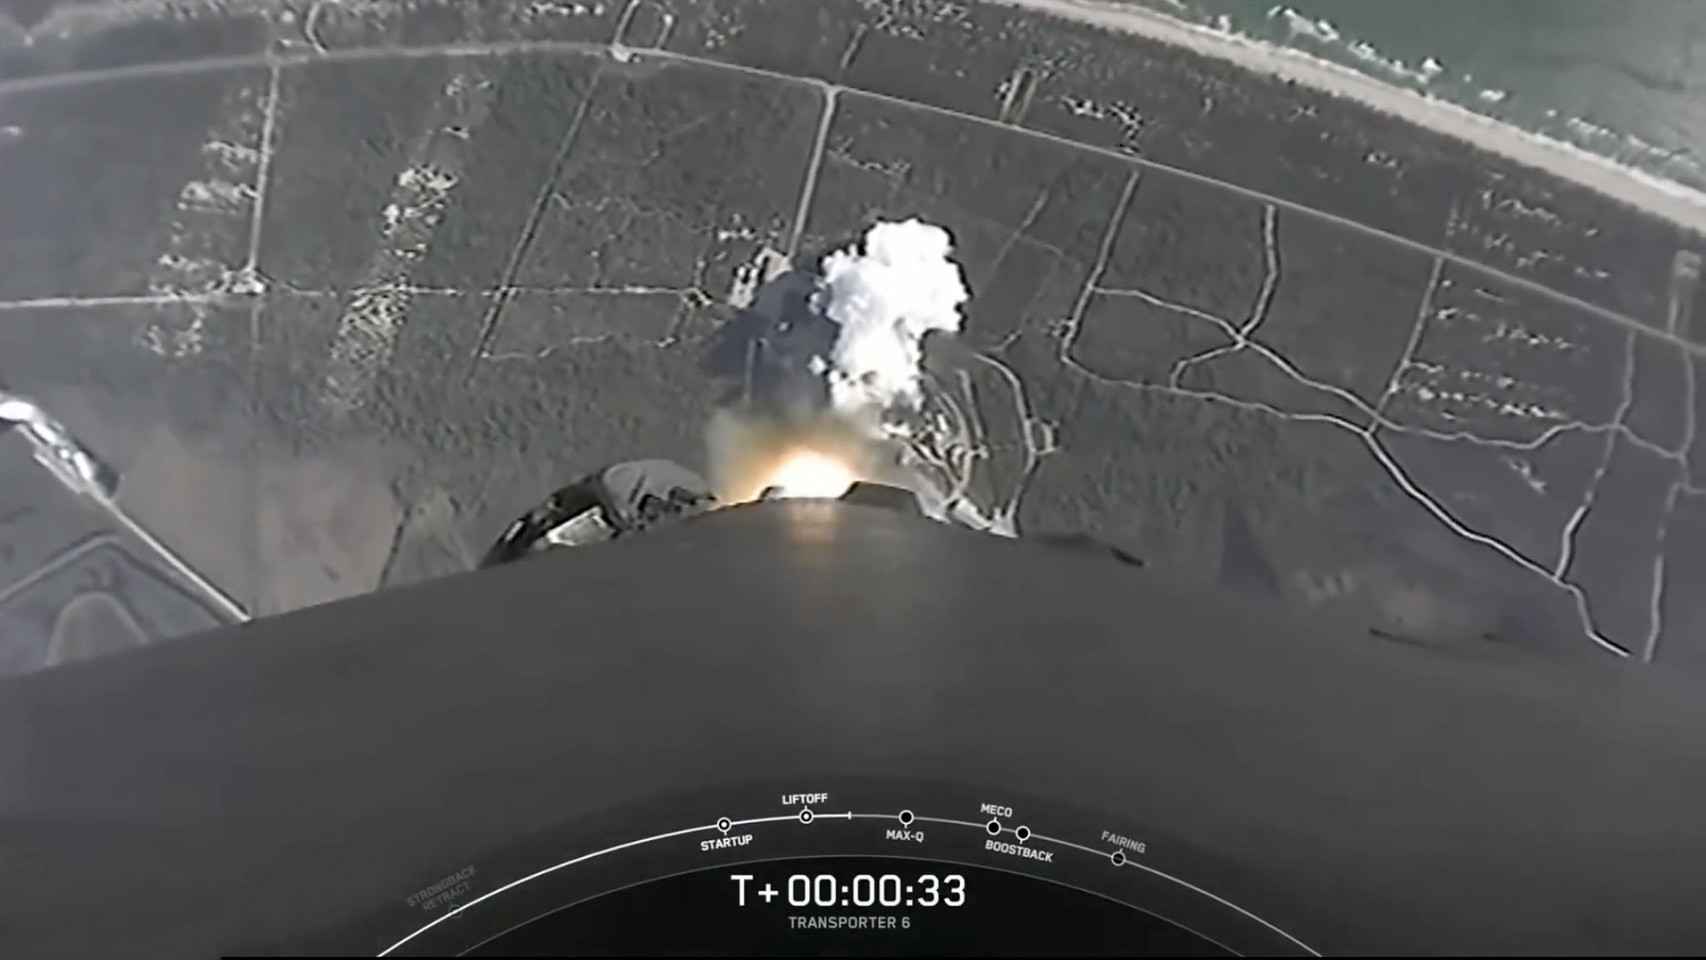 Vista del despegue desde el cohete.